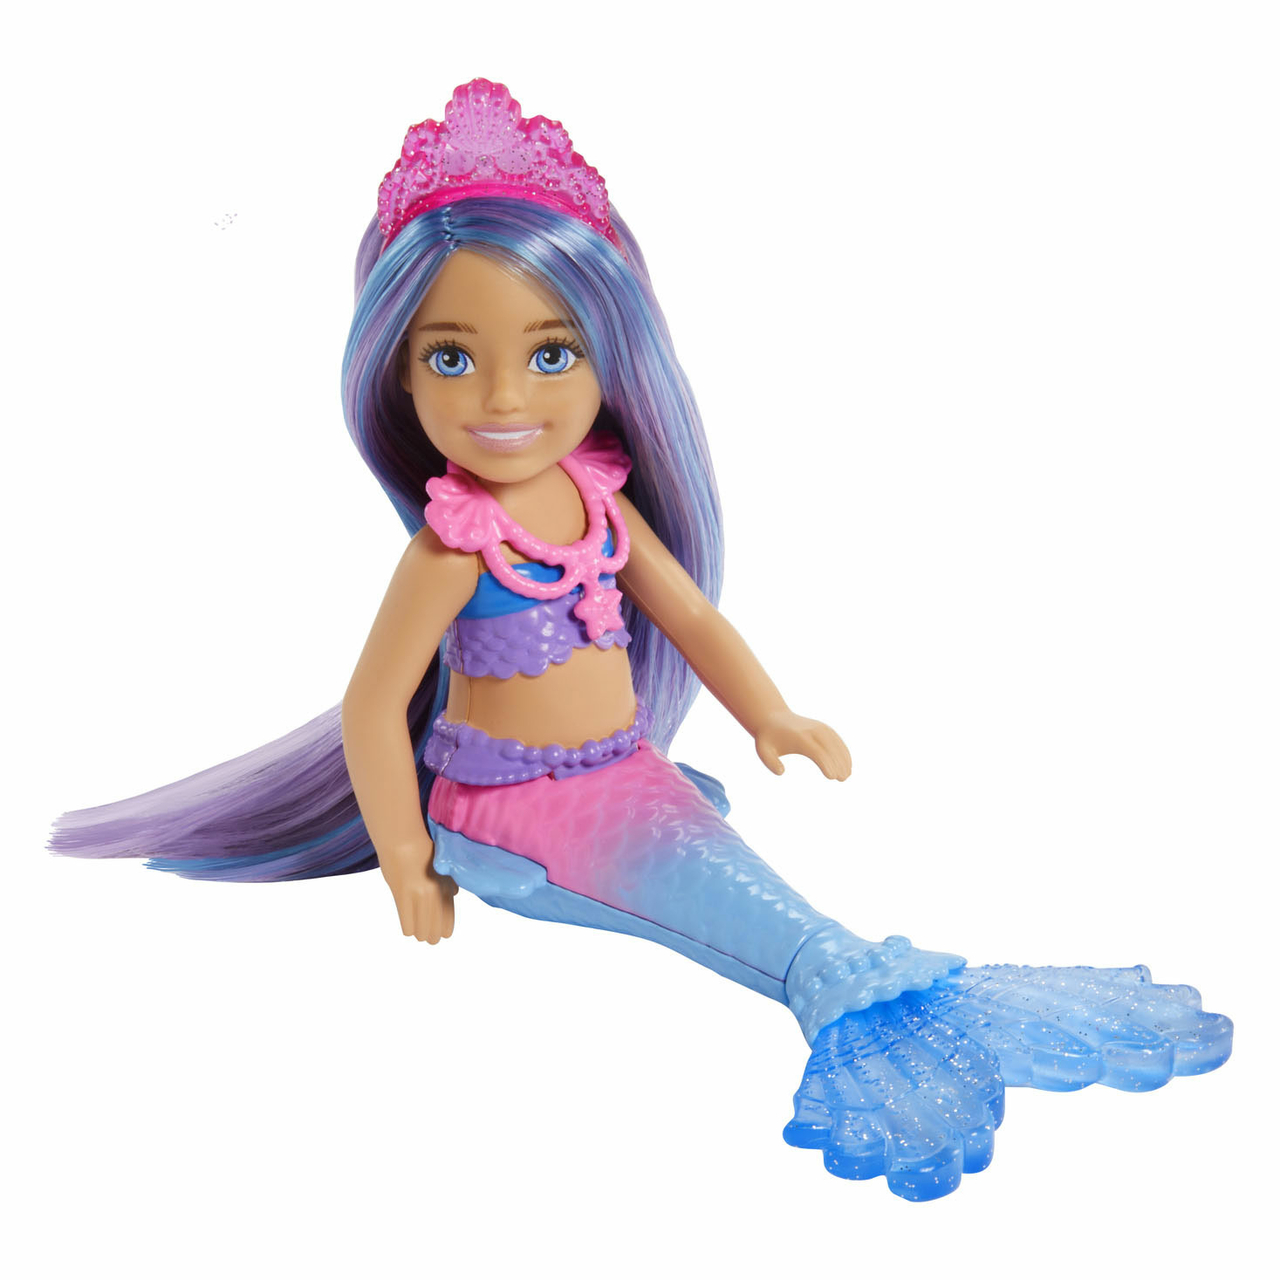 Rubriek Rust uit Bedrog Barbie Zeemeermin Power Pop Chelsea Mermaid - Het Speelgoedpaleis